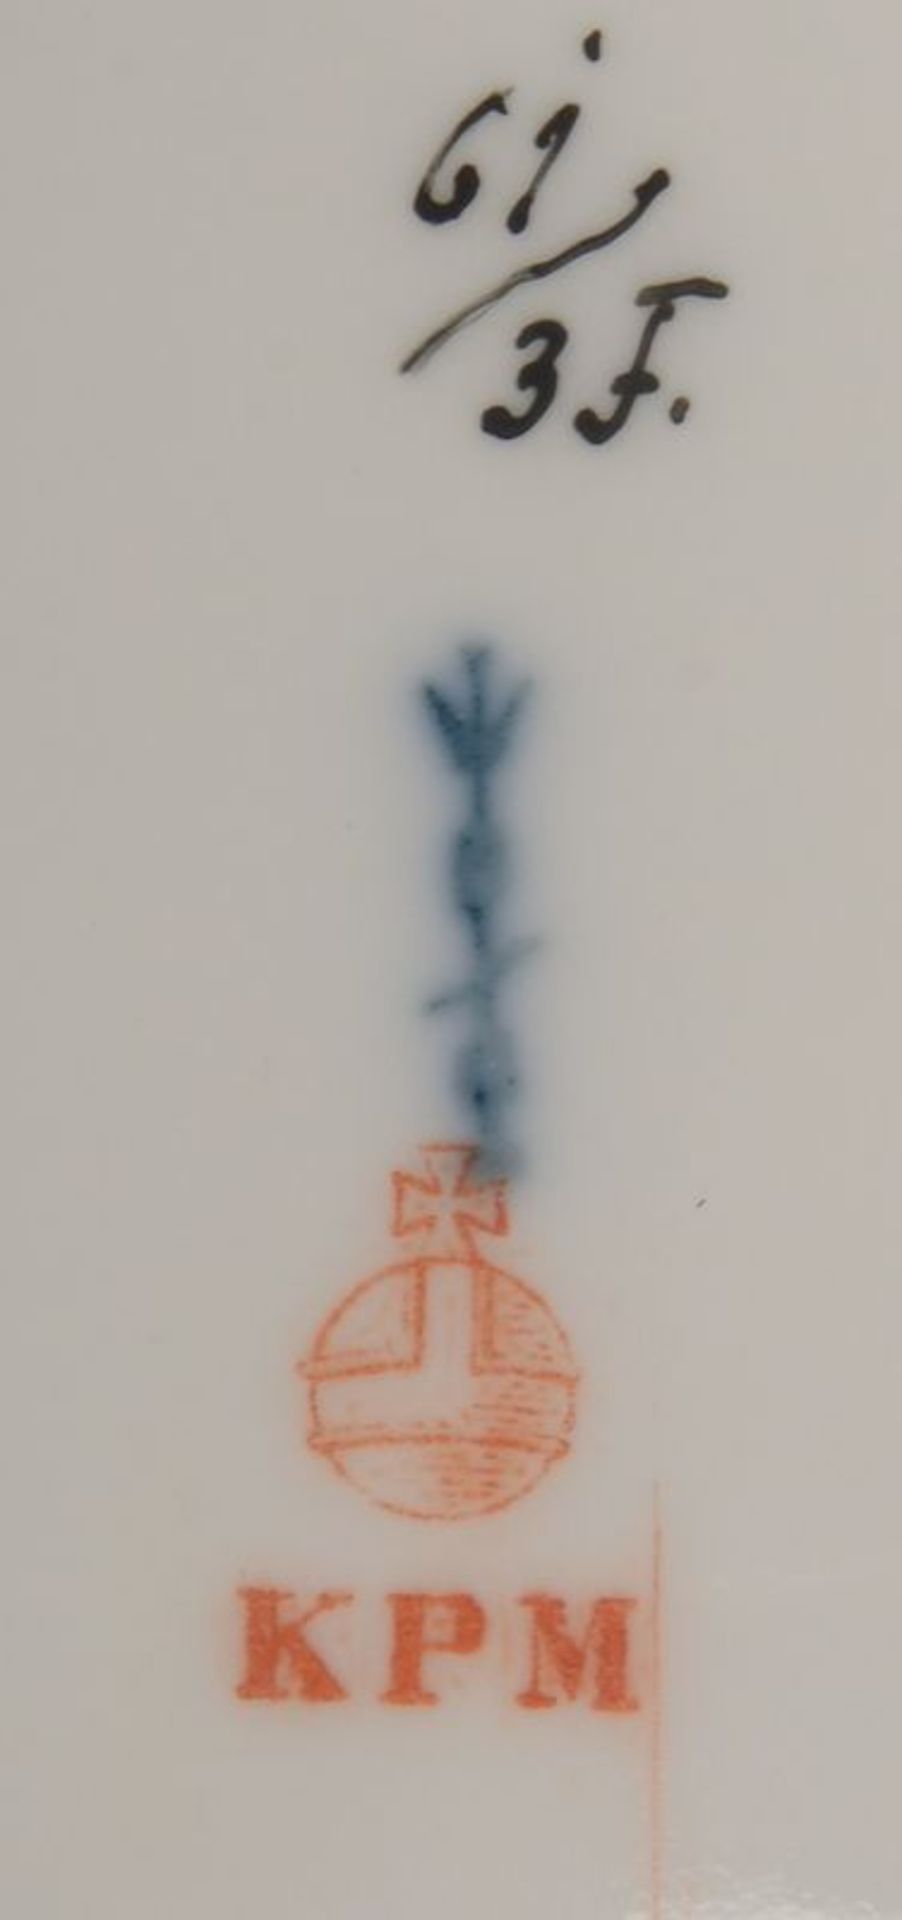 KPM, Porzellanplatte, mit Durchbruchrand, Spiegel mit Blumendekor in Weichmalerei, mit Zeptermarke - Bild 2 aus 2